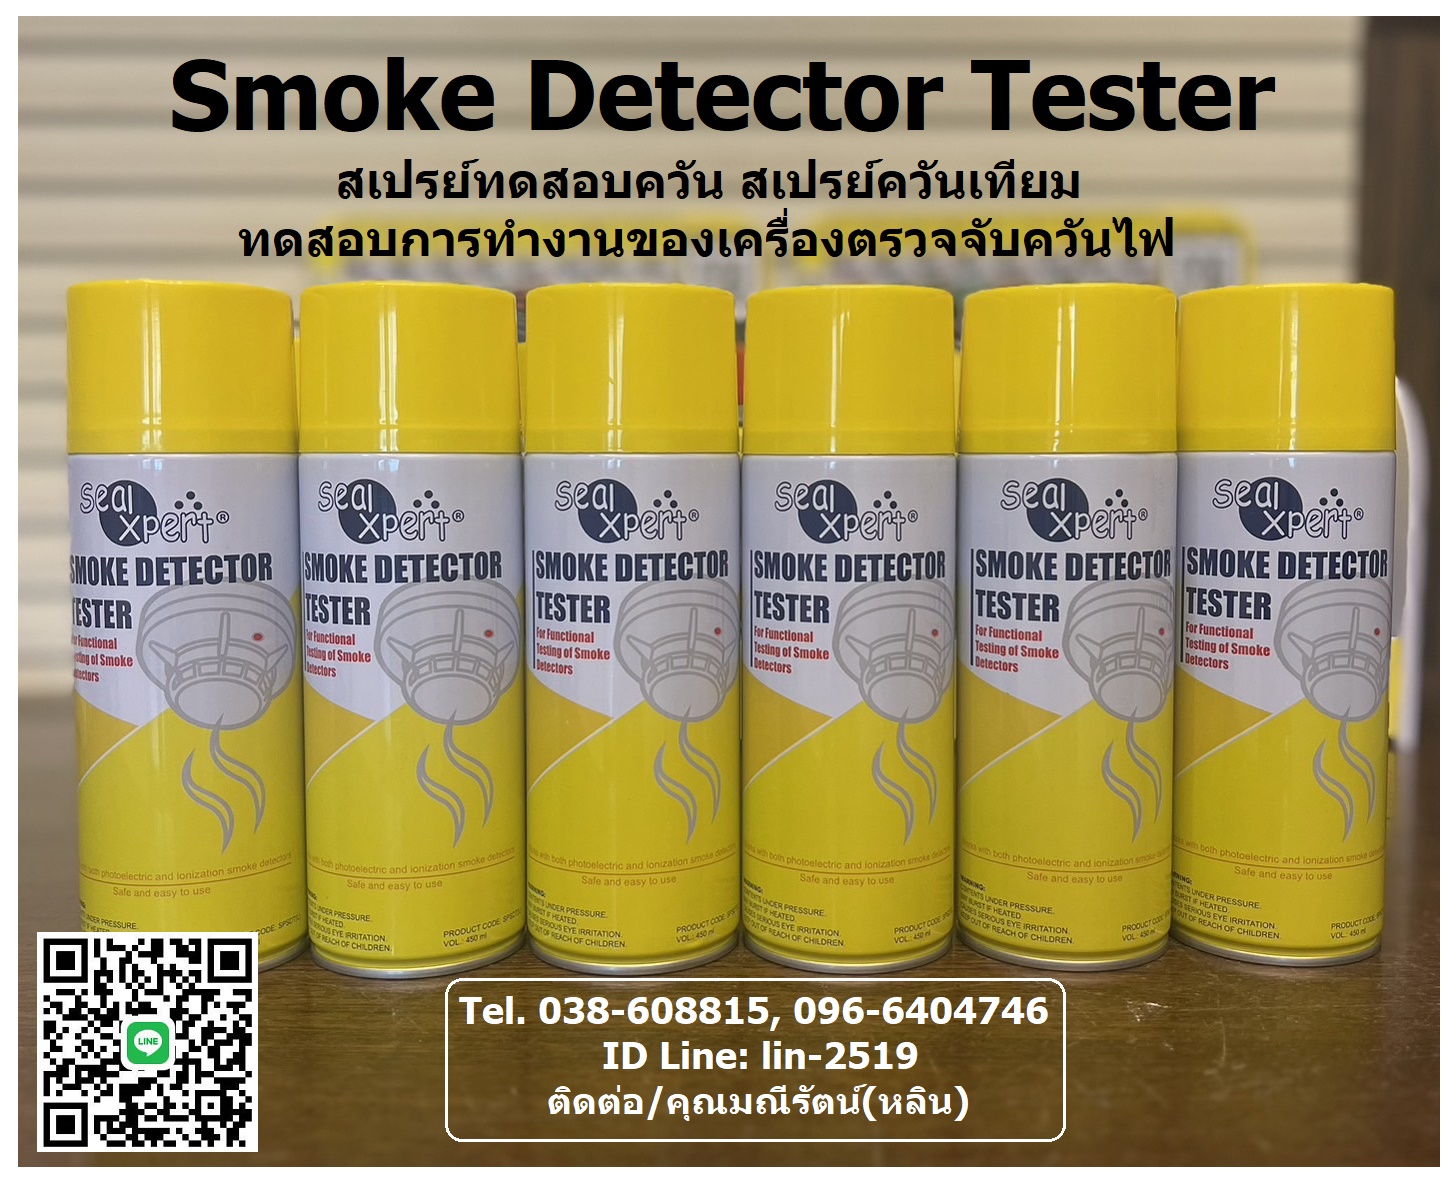 Seal Xpert Smoke Detector Test สเปรย์ทดสอบควัน สเปรย์ควันเทียม ทดสอบการทำงานของเครื่องตรวจจับควันไฟว่ายังใช้งานได้เป็นปกติหรือไม่ รูปที่ 1